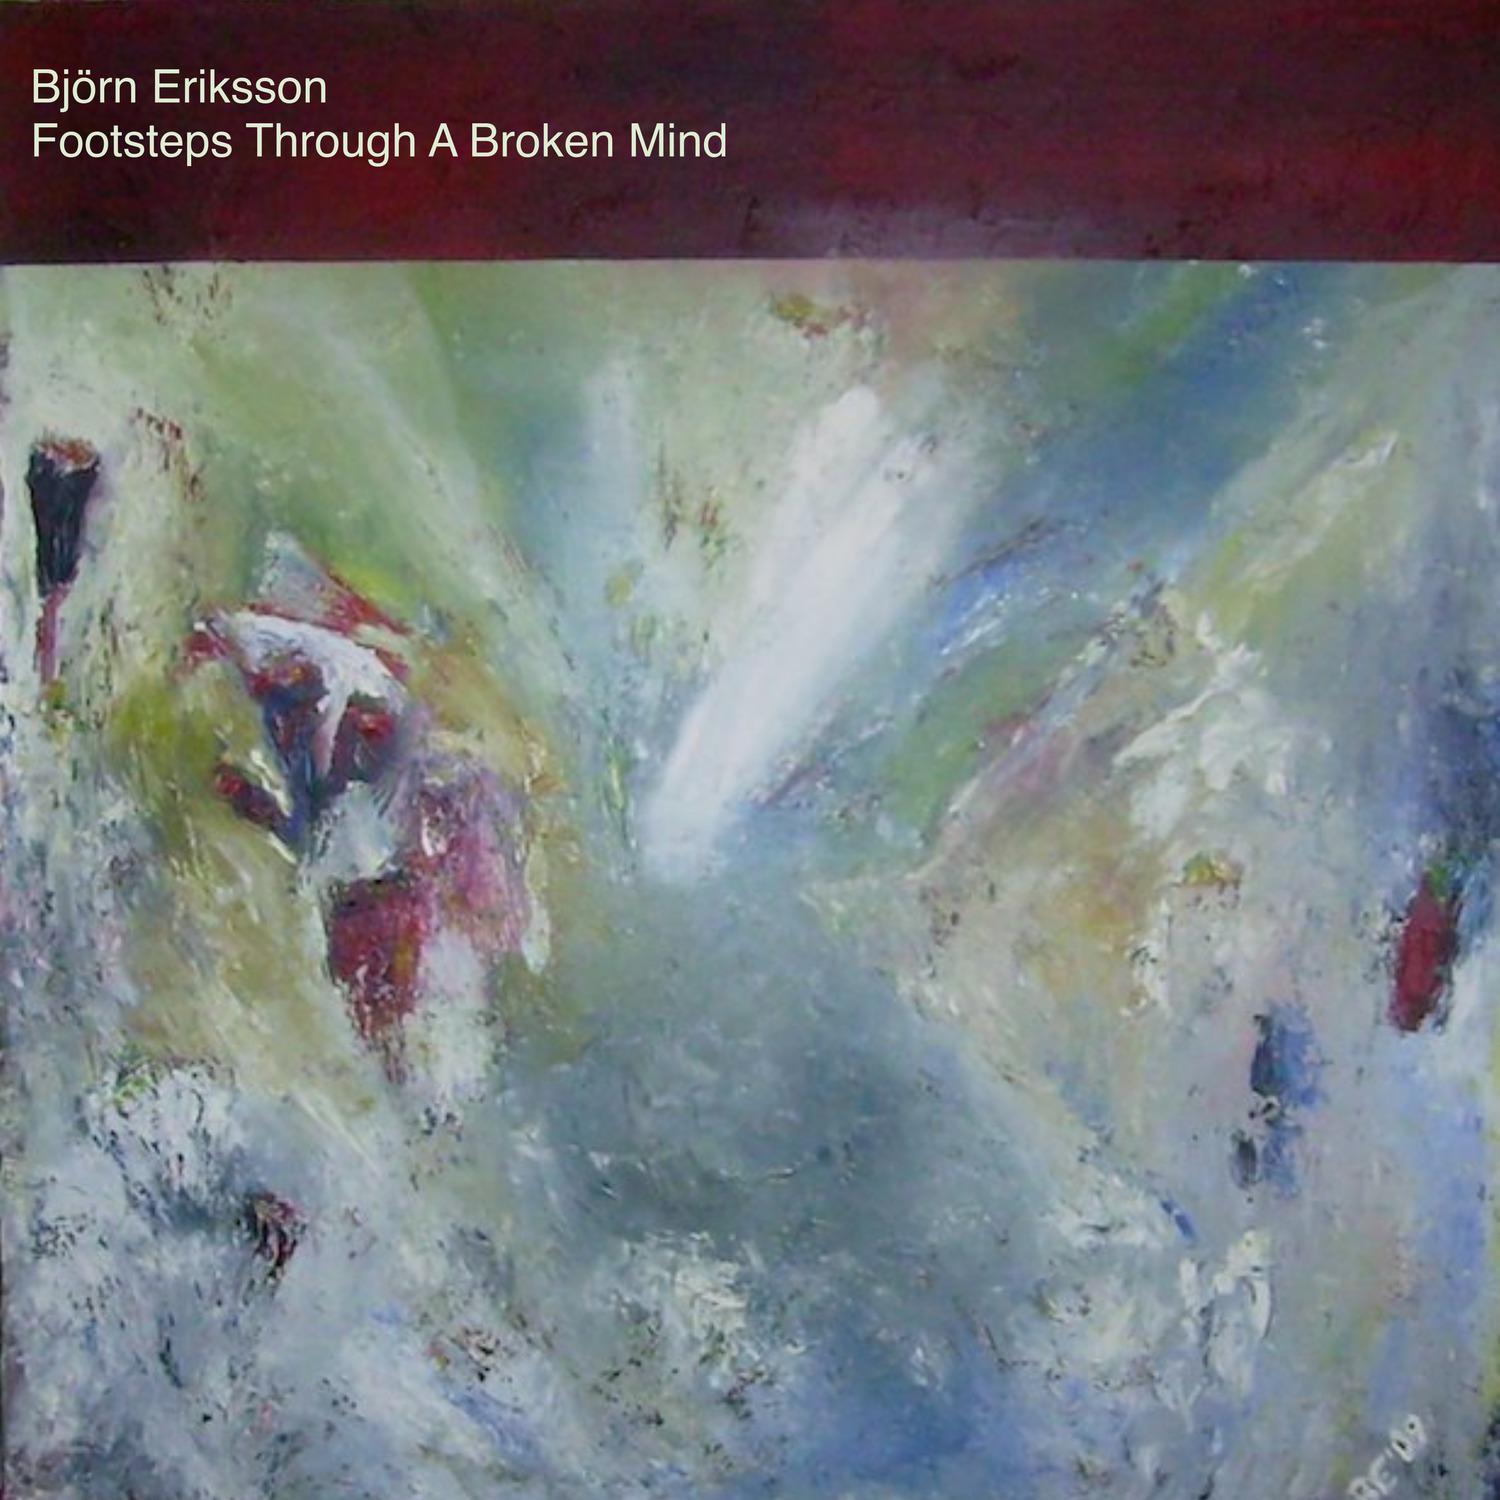 Björn Eriksson - A Wonderful Change